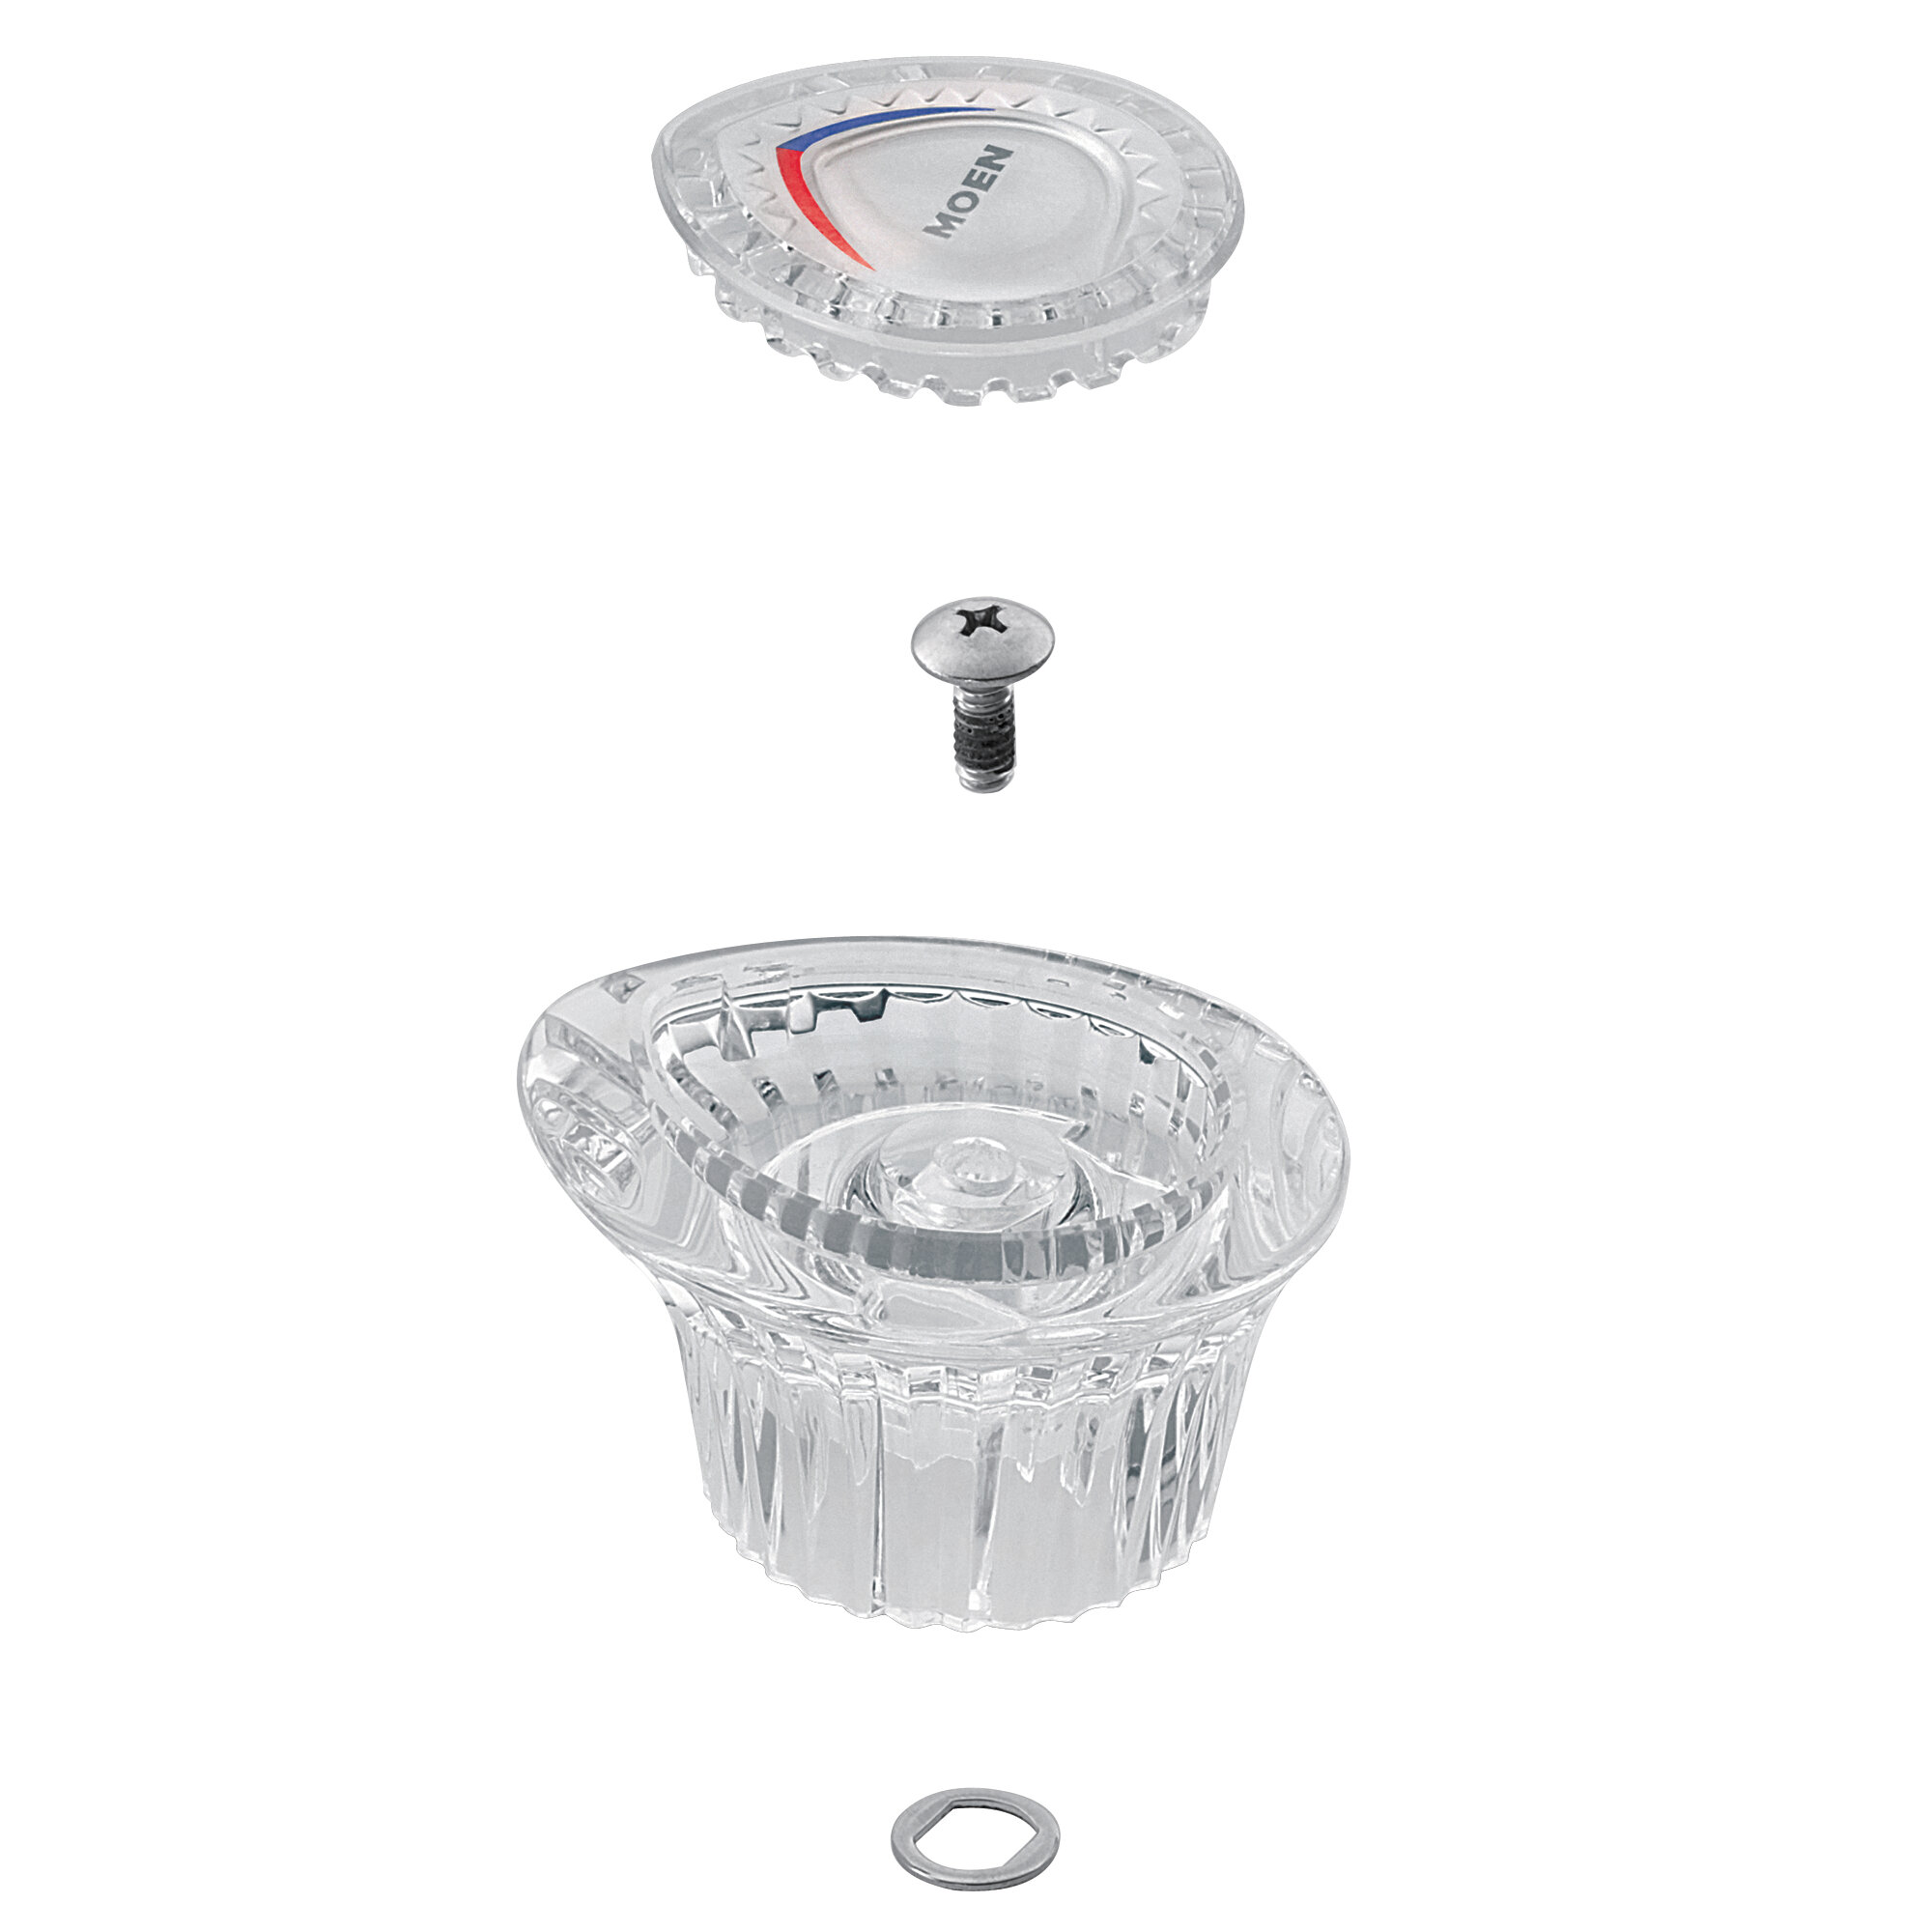 96797 Moen Chateau Knob Handle Kit For Tub Shower Faucet Trim